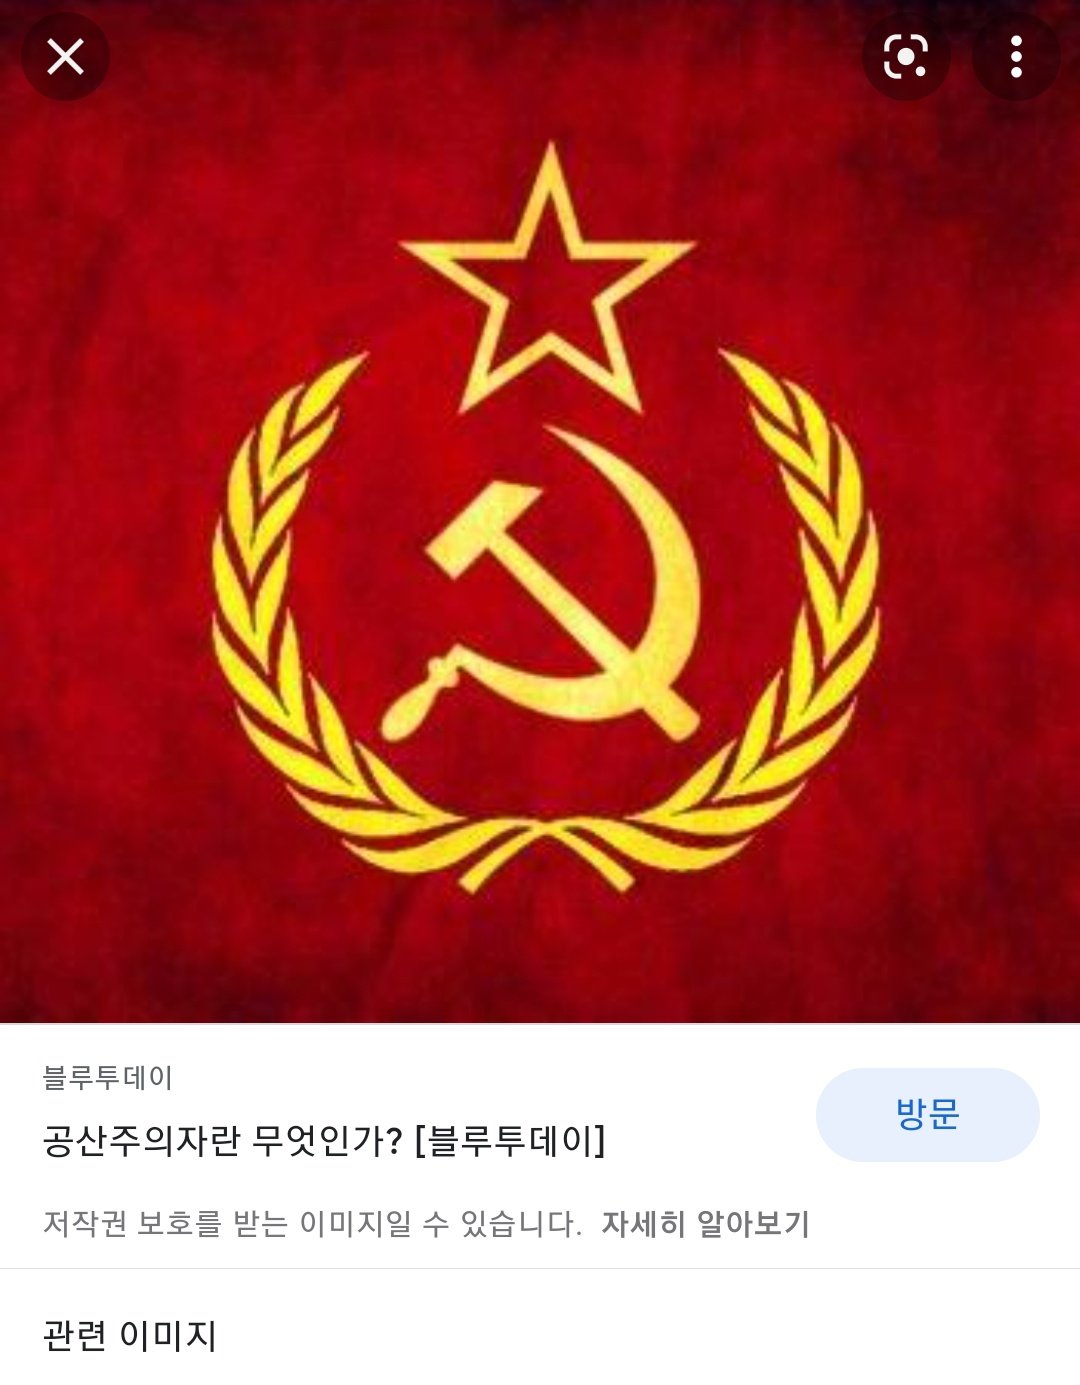 공산주의